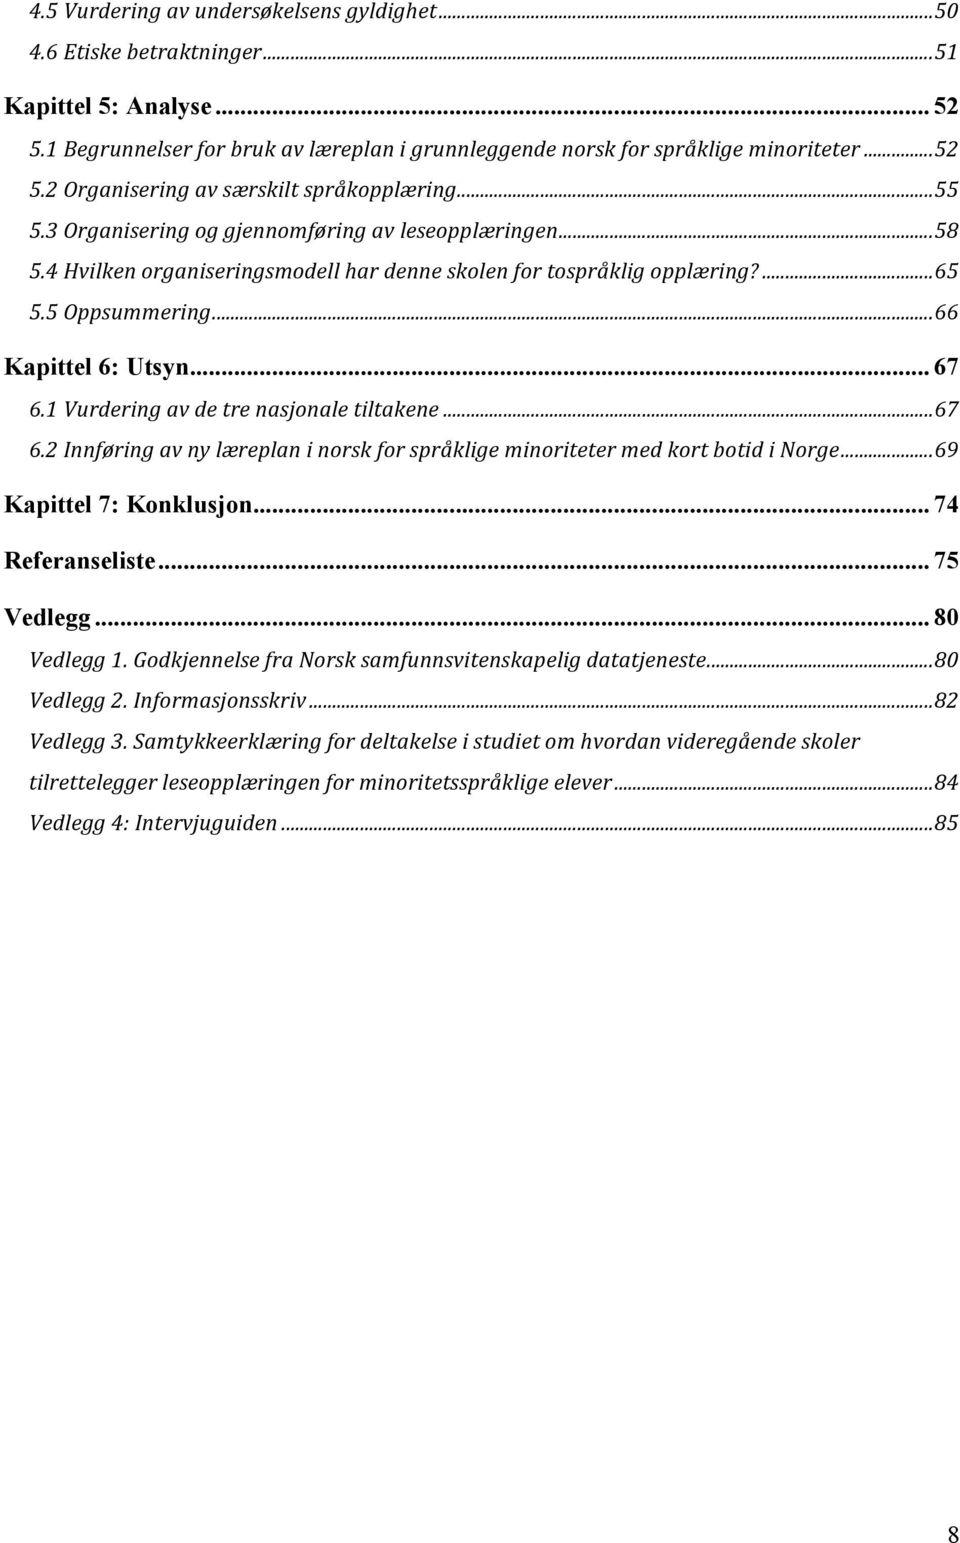 1 Vurdering av de tre nasjonale tiltakene... 67 6.2 Innføring av ny læreplan i norsk for språklige minoriteter med kort botid i Norge... 69 Kapittel 7: Konklusjon... 74 Referanseliste... 75 Vedlegg.